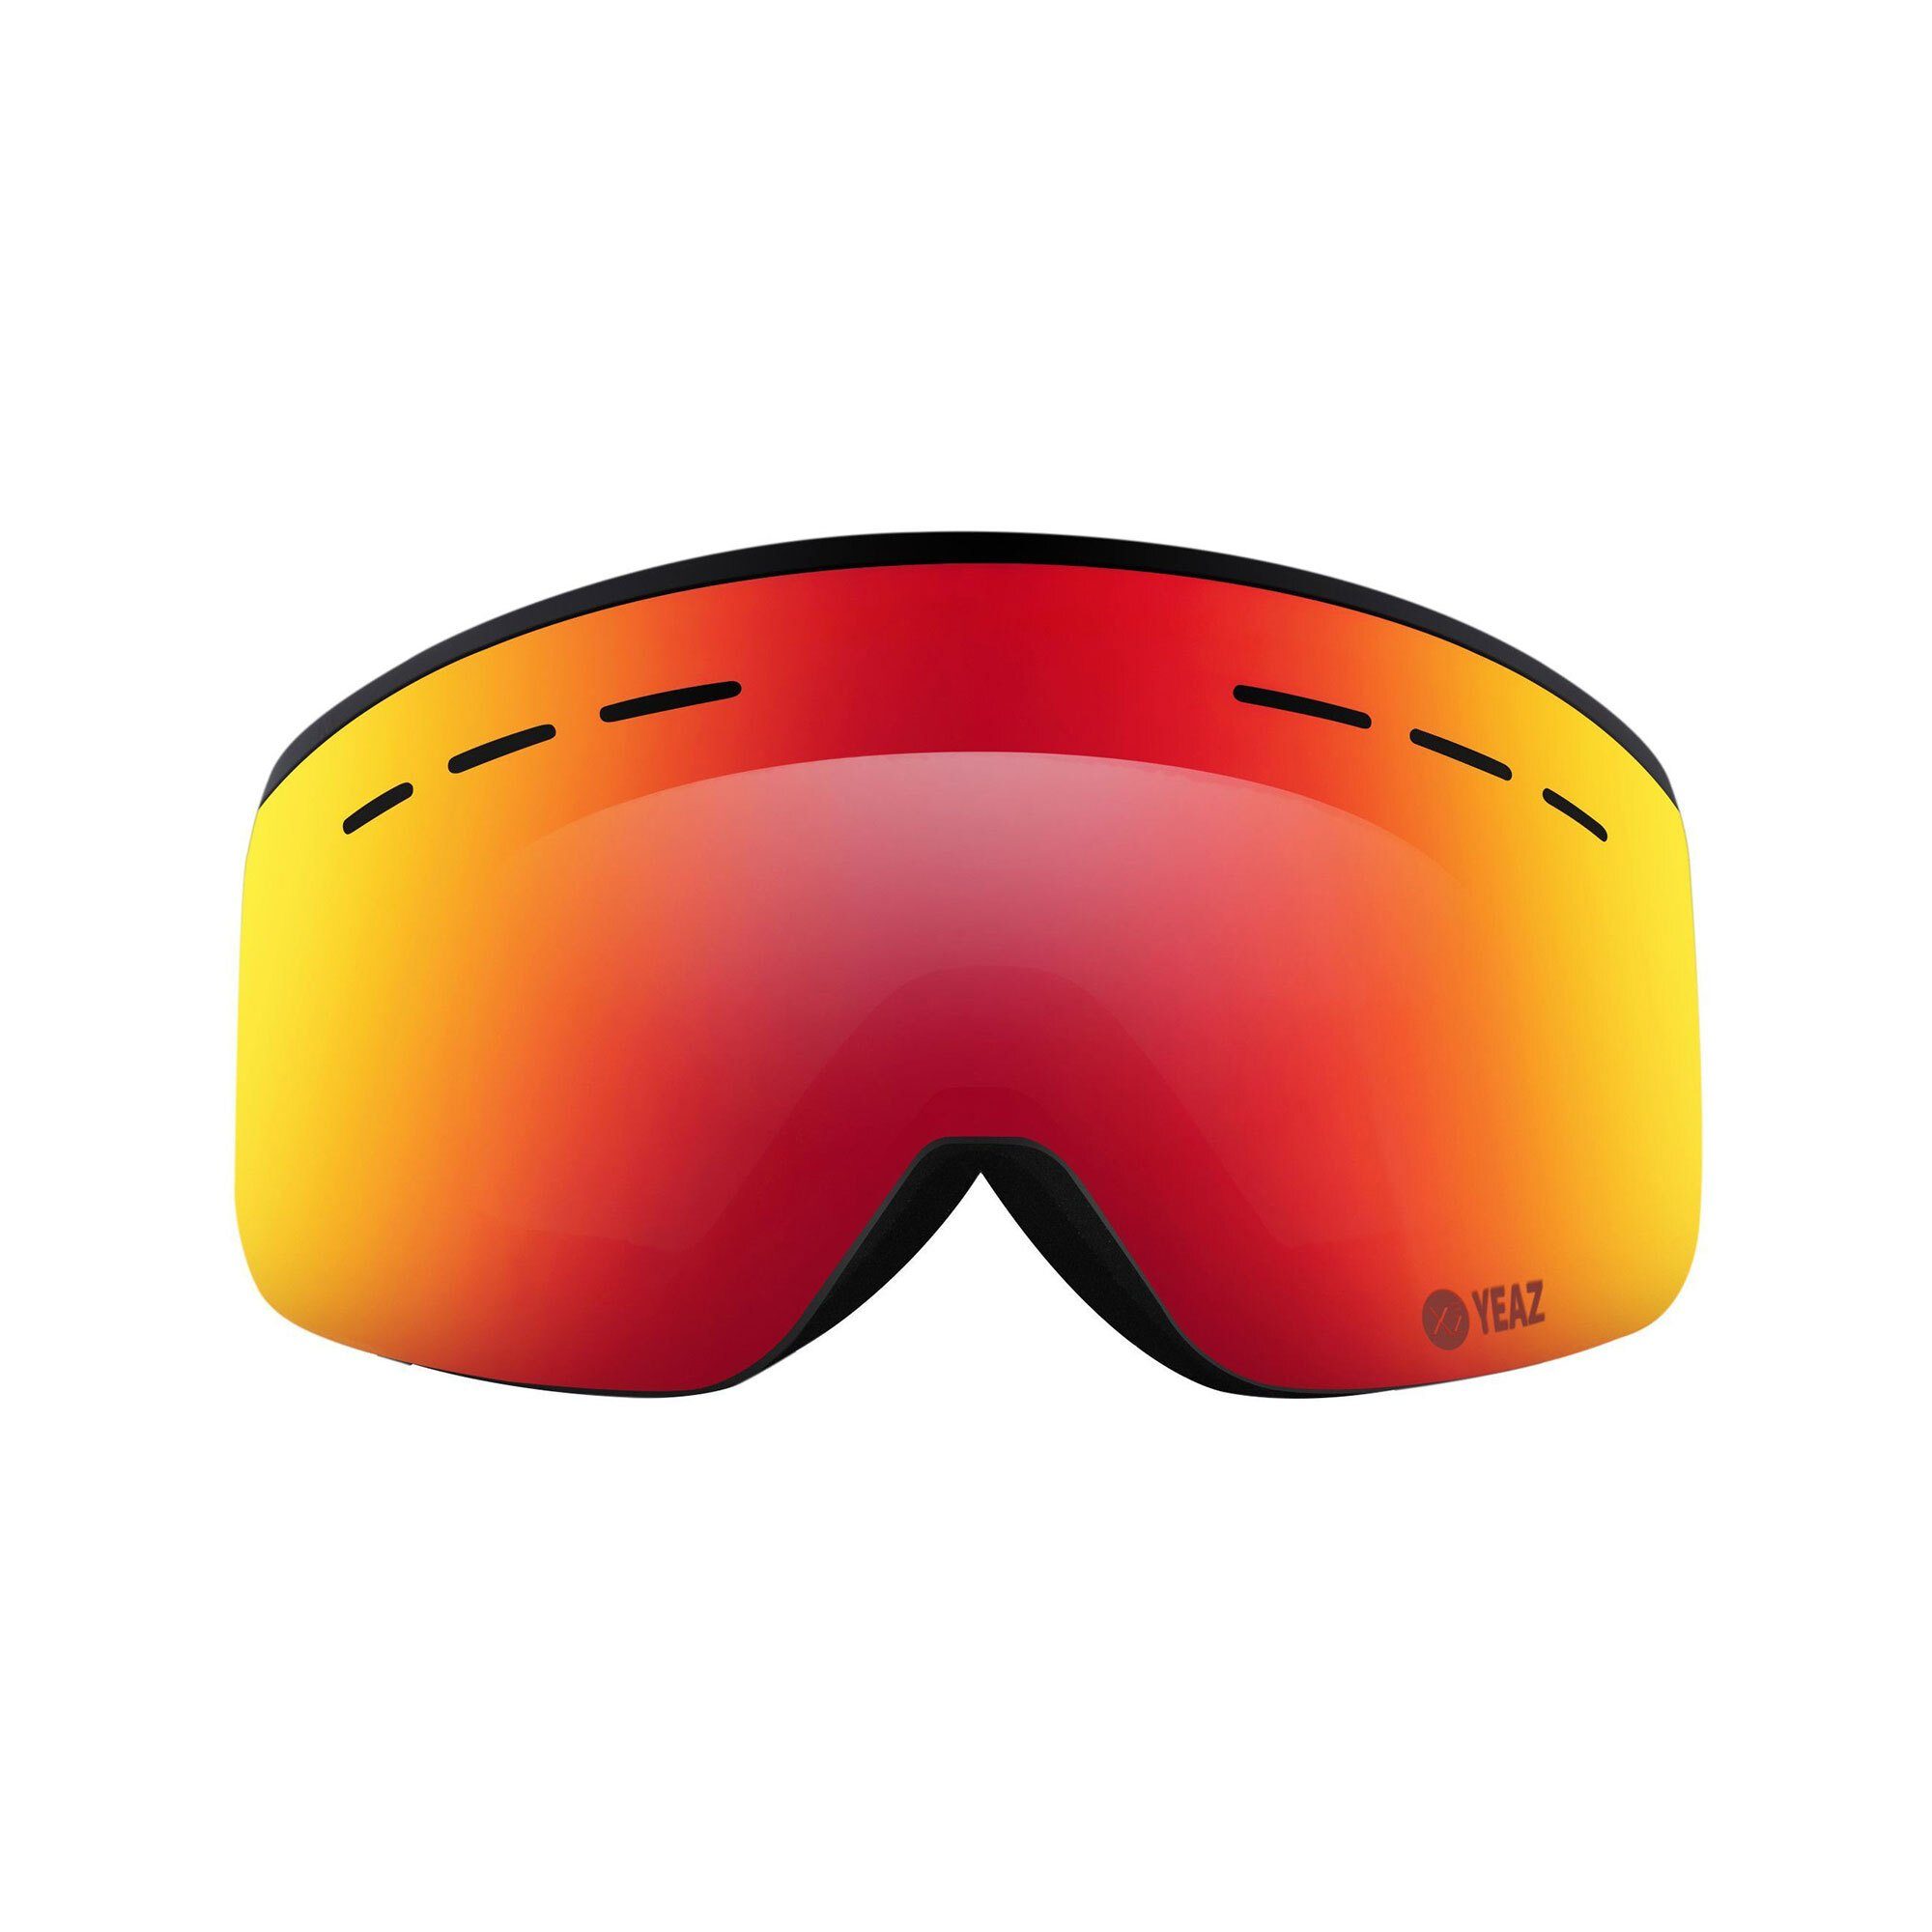 Echtheitsgarantie YEAZ Skibrille RISE ski- snowboardbrille und für Jugendliche Premium-Ski- Erwachsene Snowboardbrille und schwarz